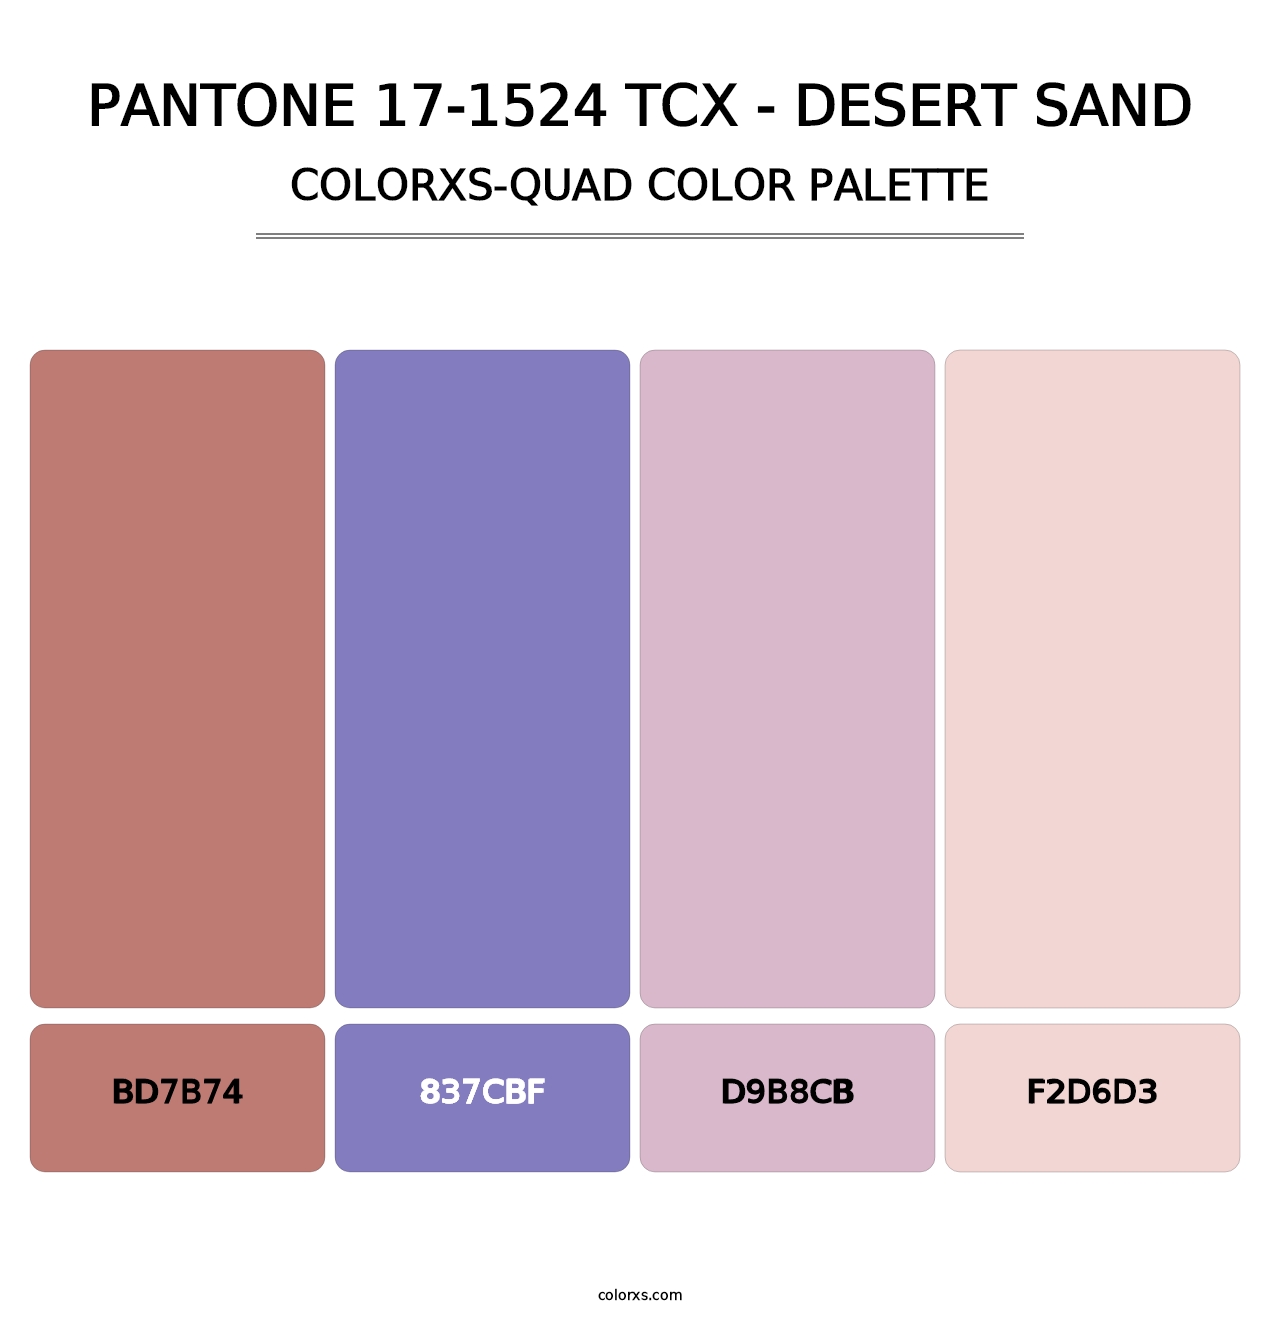 PANTONE 17-1524 TCX - Desert Sand - Colorxs Quad Palette